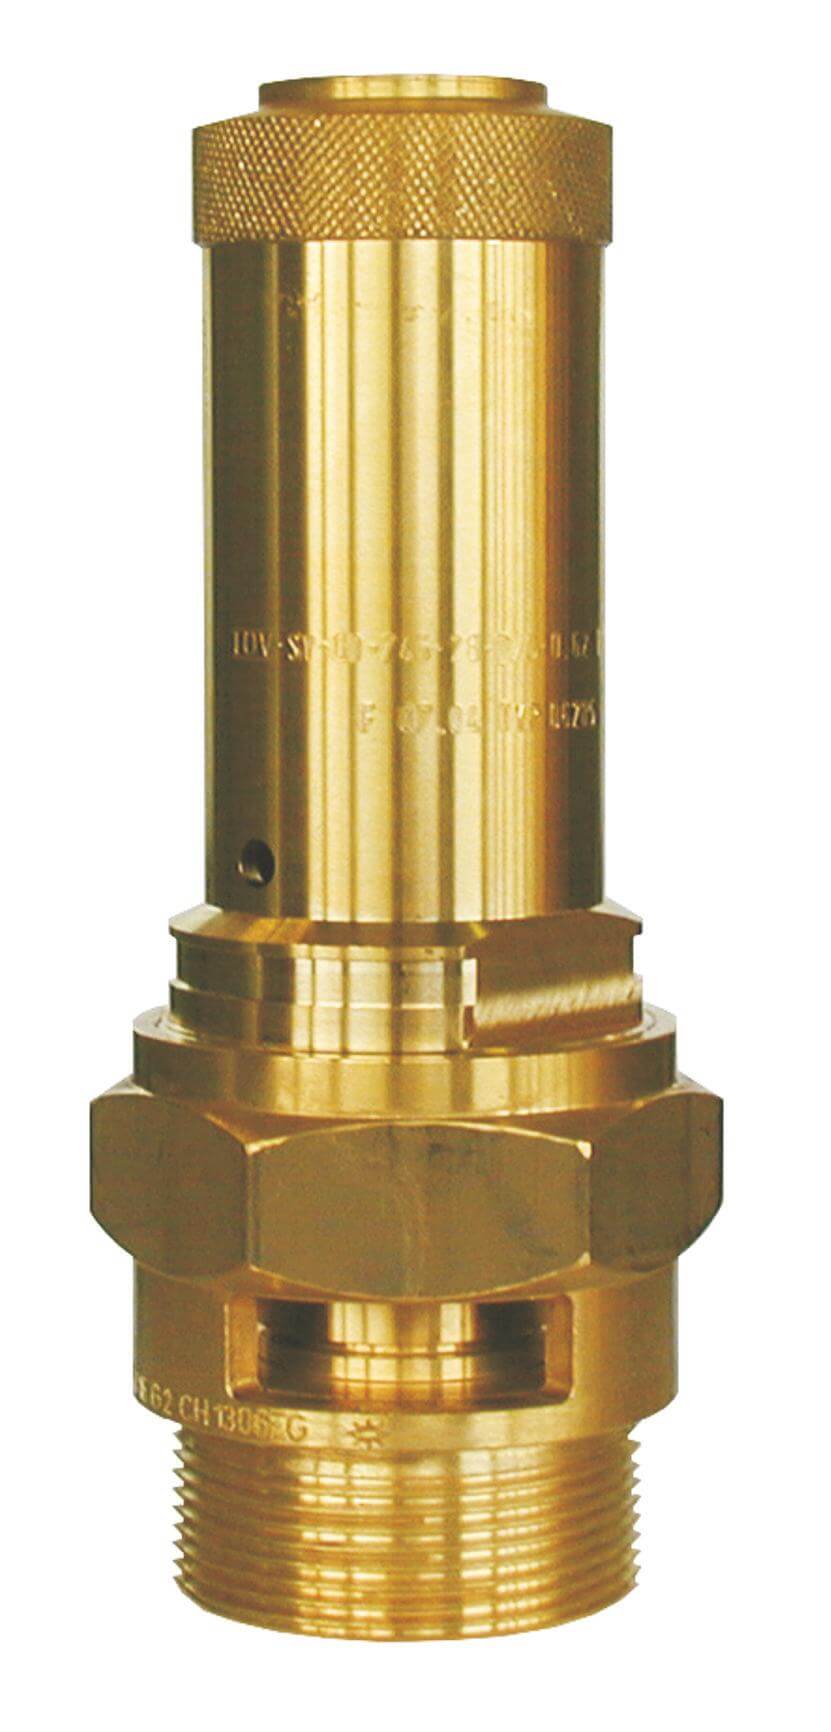 Herose Pojistný ventil pro stlačený vzduch 6205 - 1" Pojistný tlak: 4,4 bar